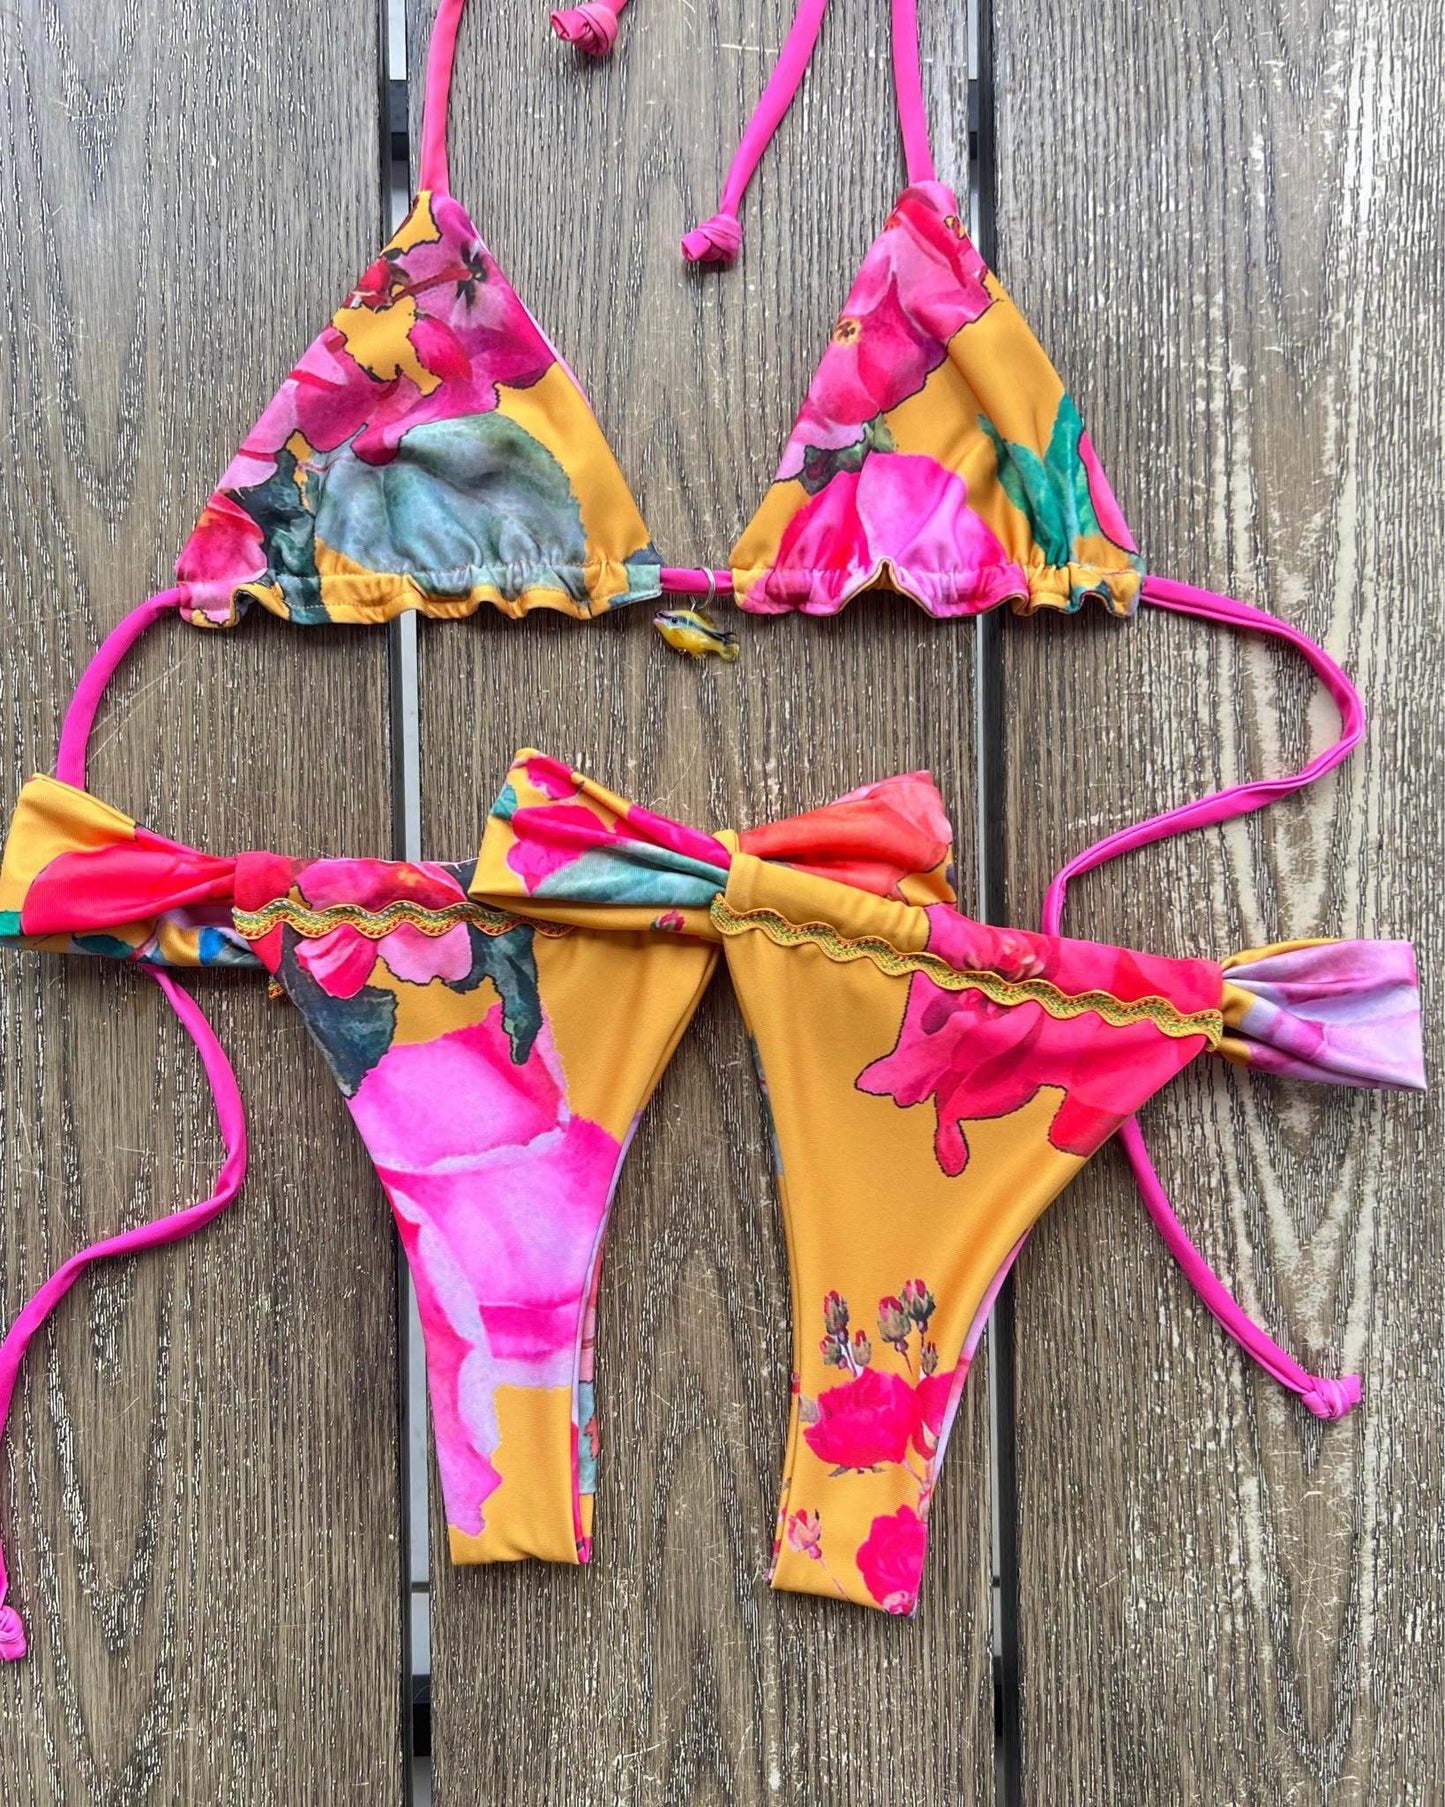 Bikini Set: Top Triangular con Pichi + Brasil Bottom con adorno